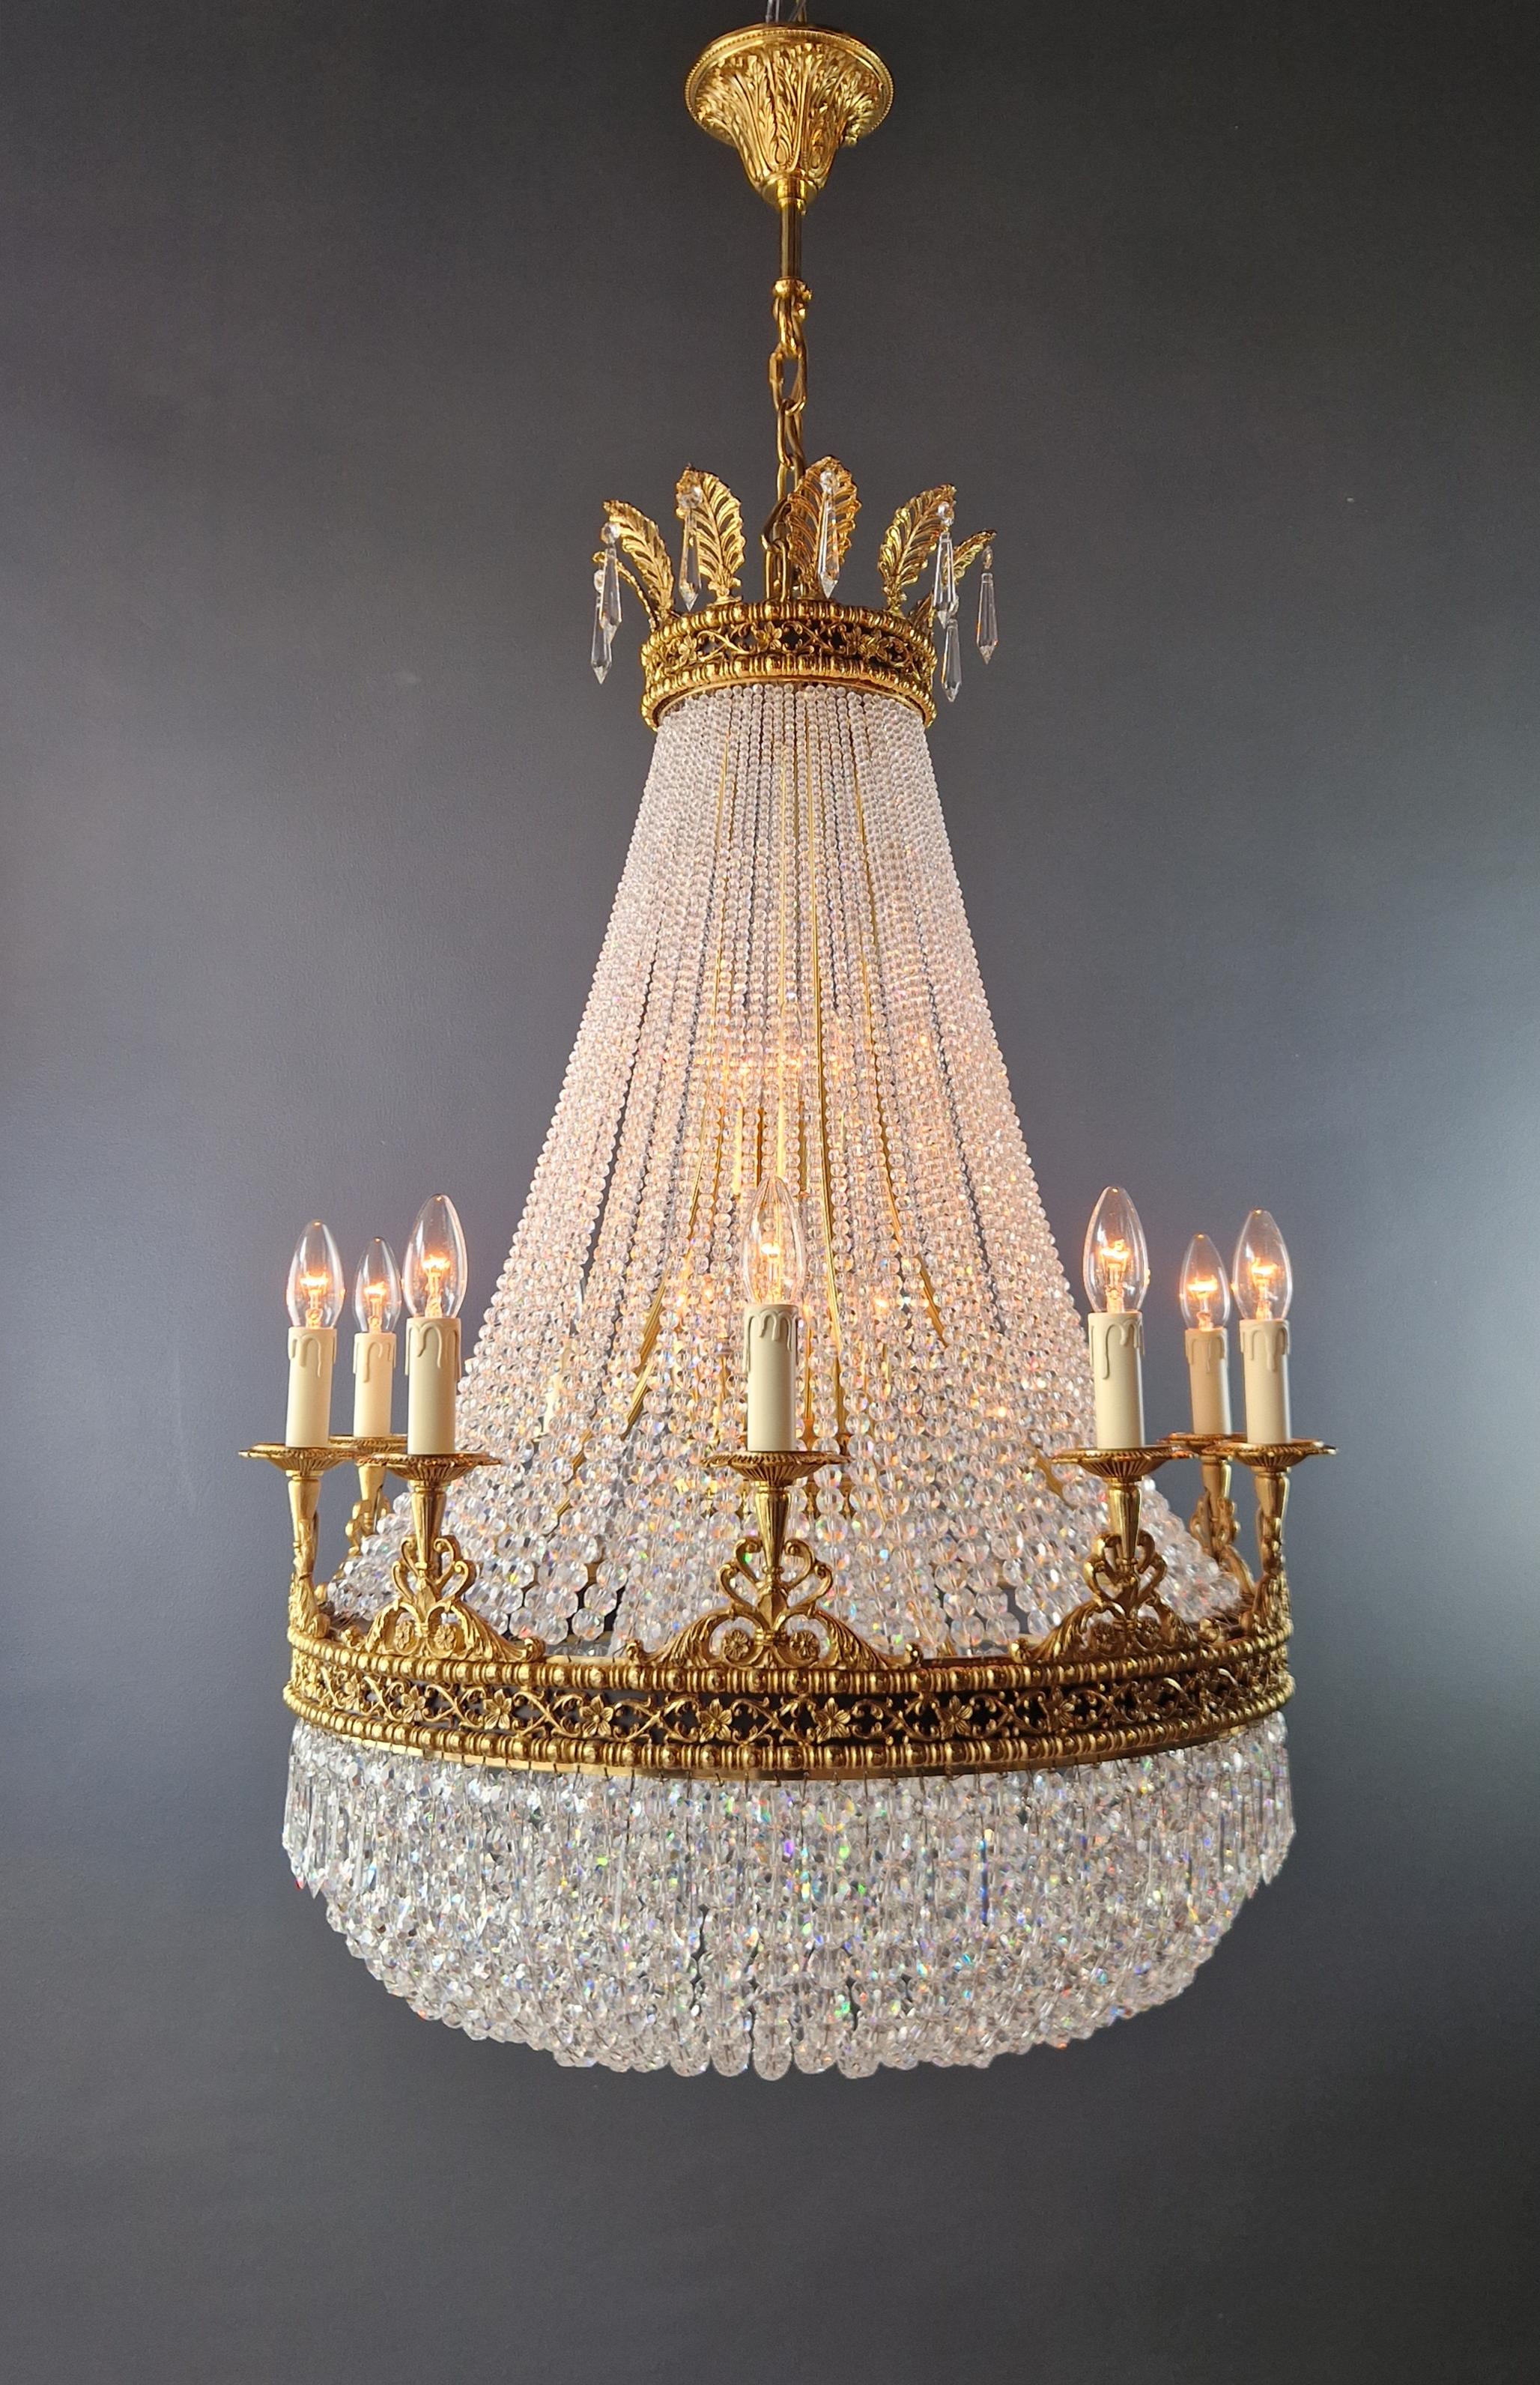 Voici un superbe lustre Empire Sac à Perles en laiton, une pièce exquise ornée de cristaux captivants, rappelant le style classique de l'ère Empire. Il s'agit d'une nouvelle reproduction, et plusieurs sont disponibles, ce qui vous permet d'apporter